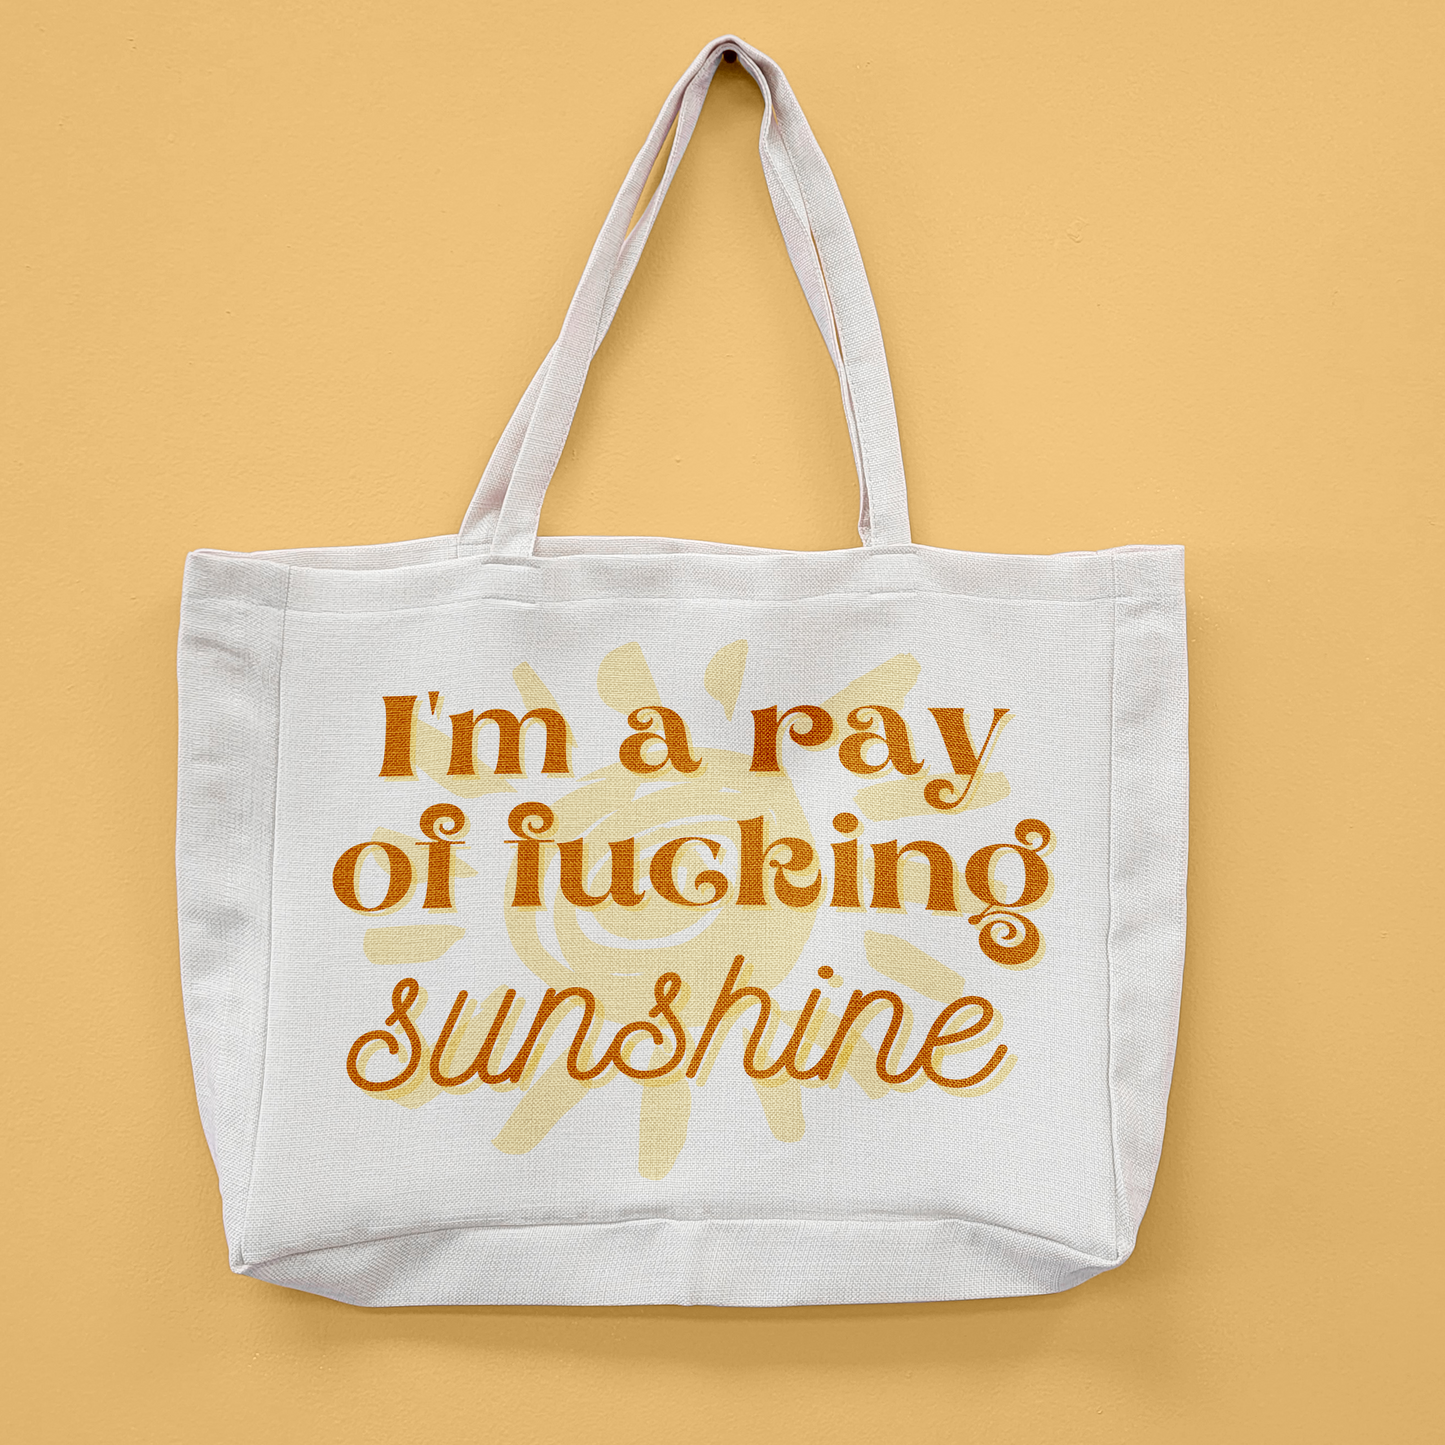 Ray Of Fucking Sunshine Oversized Tote Bag